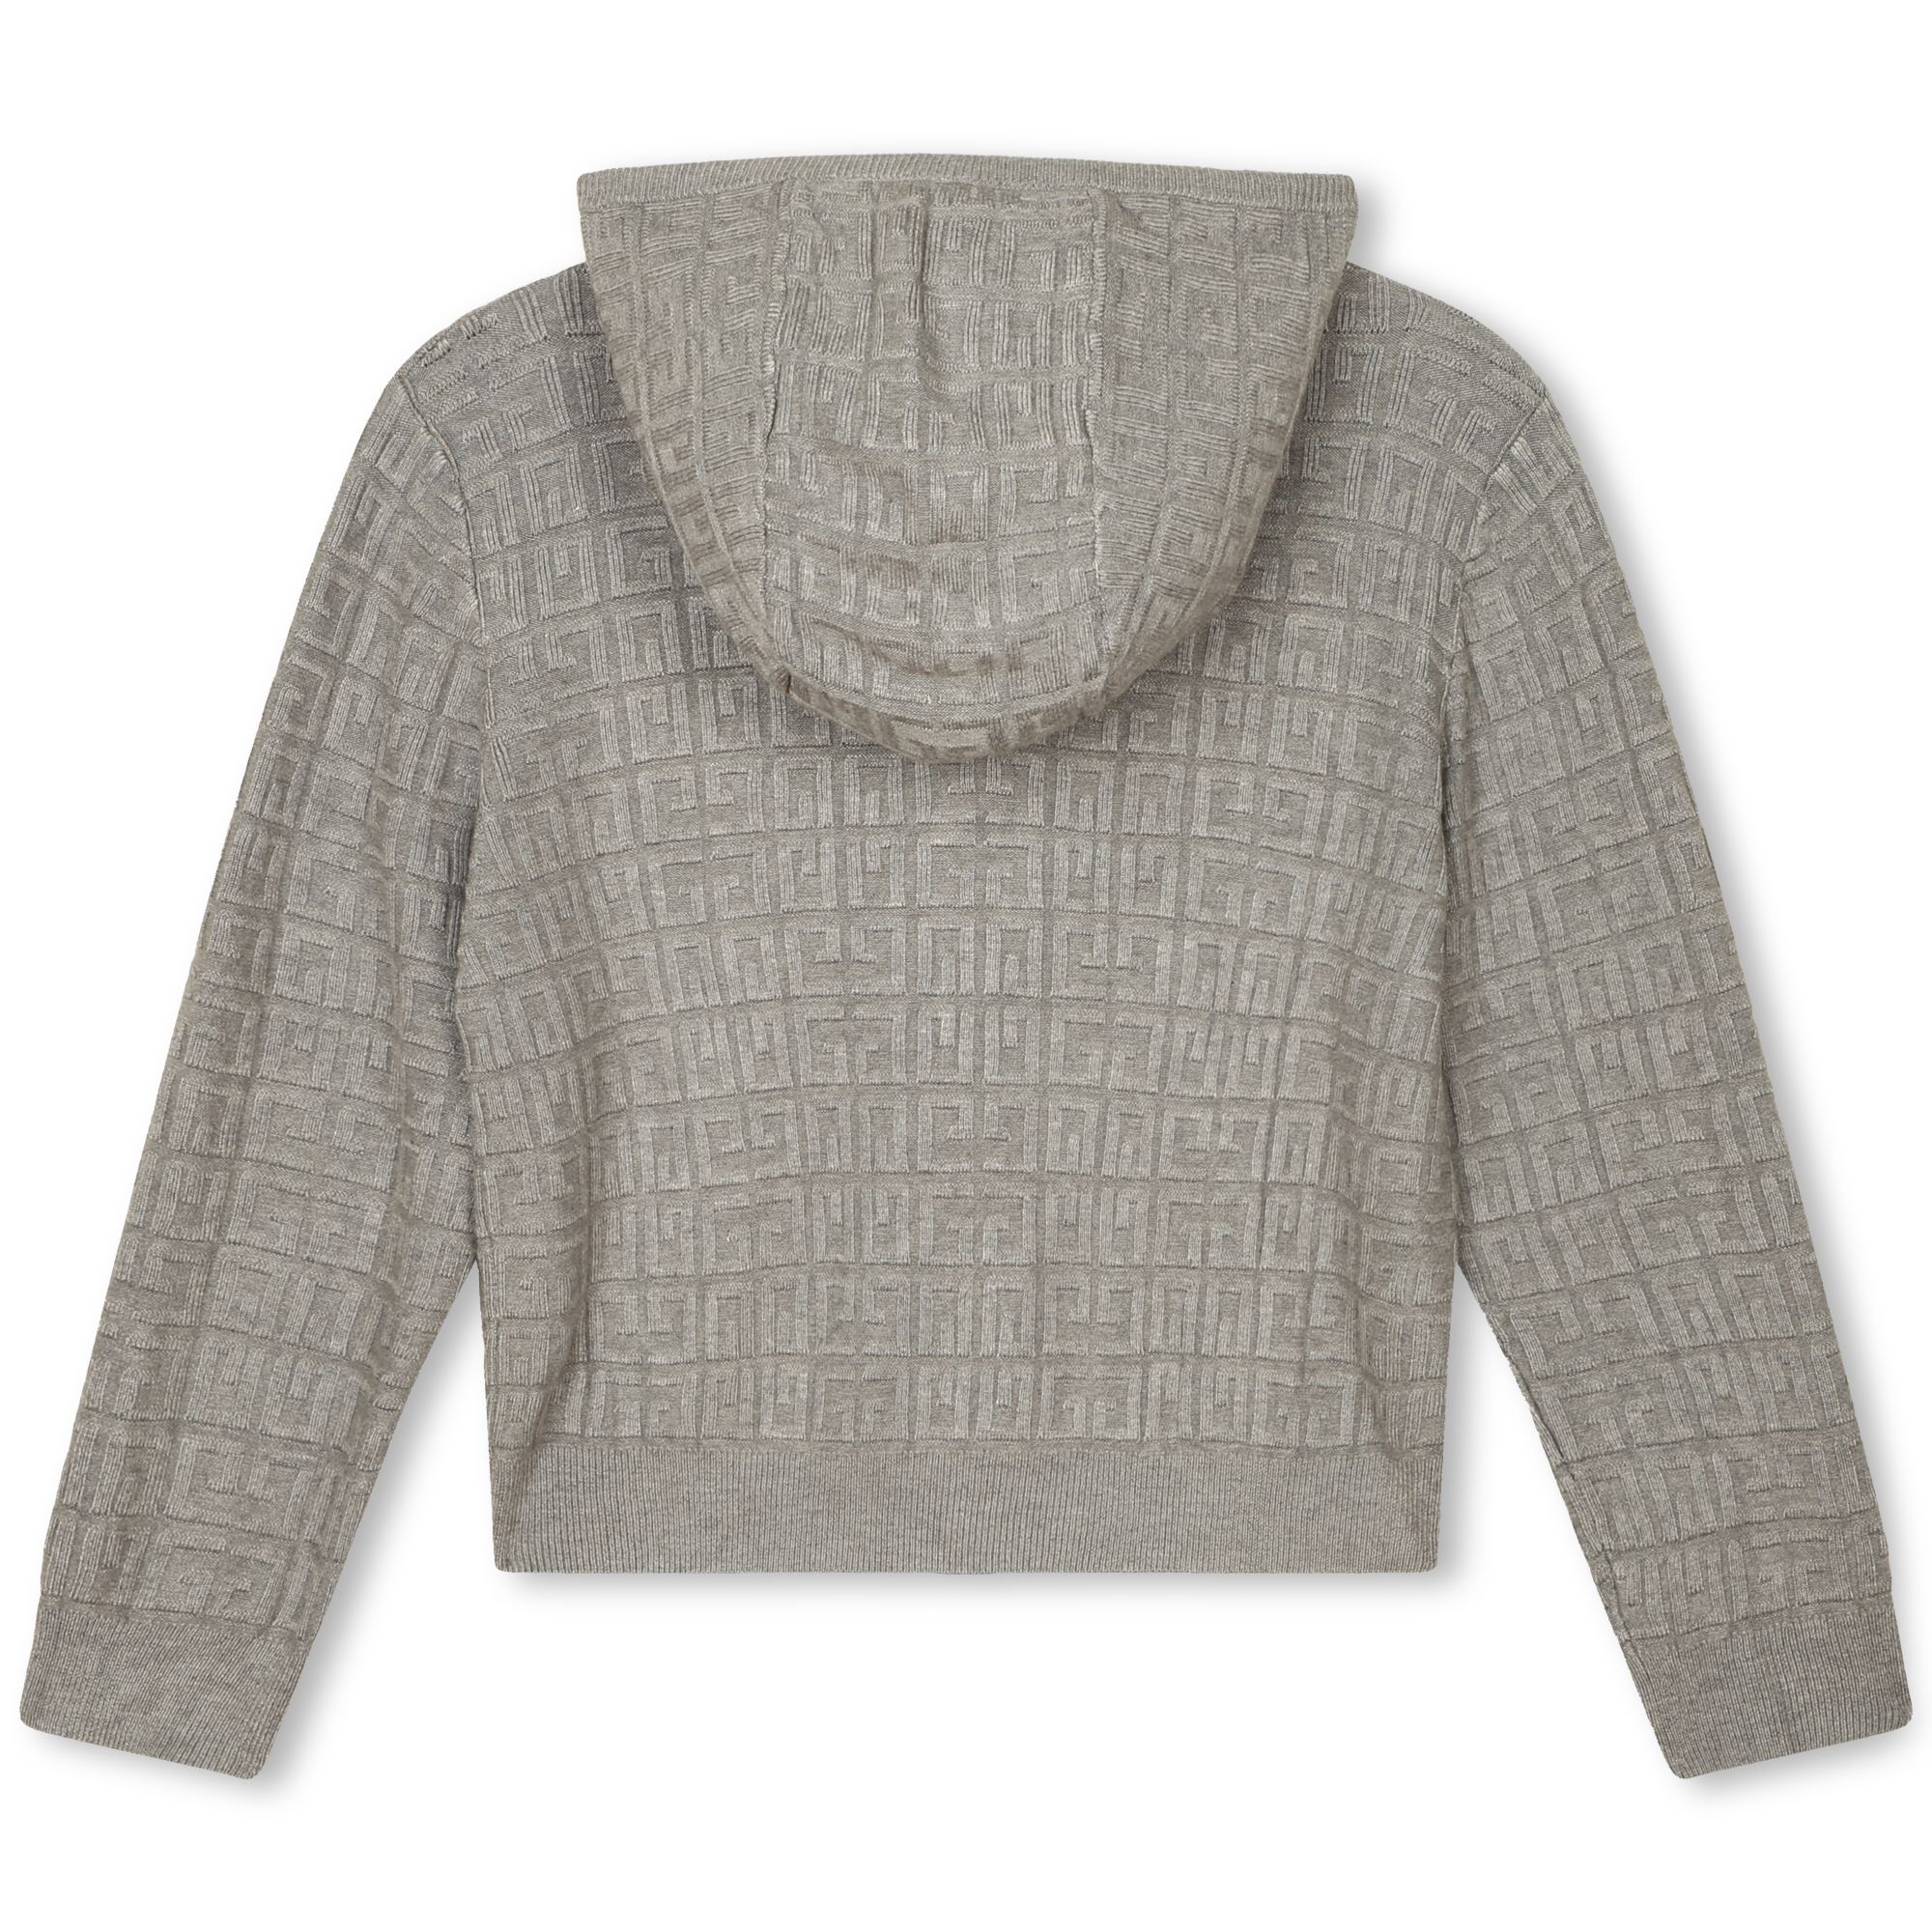 Kapuzen-Sweater aus Strick GIVENCHY Für MÄDCHEN